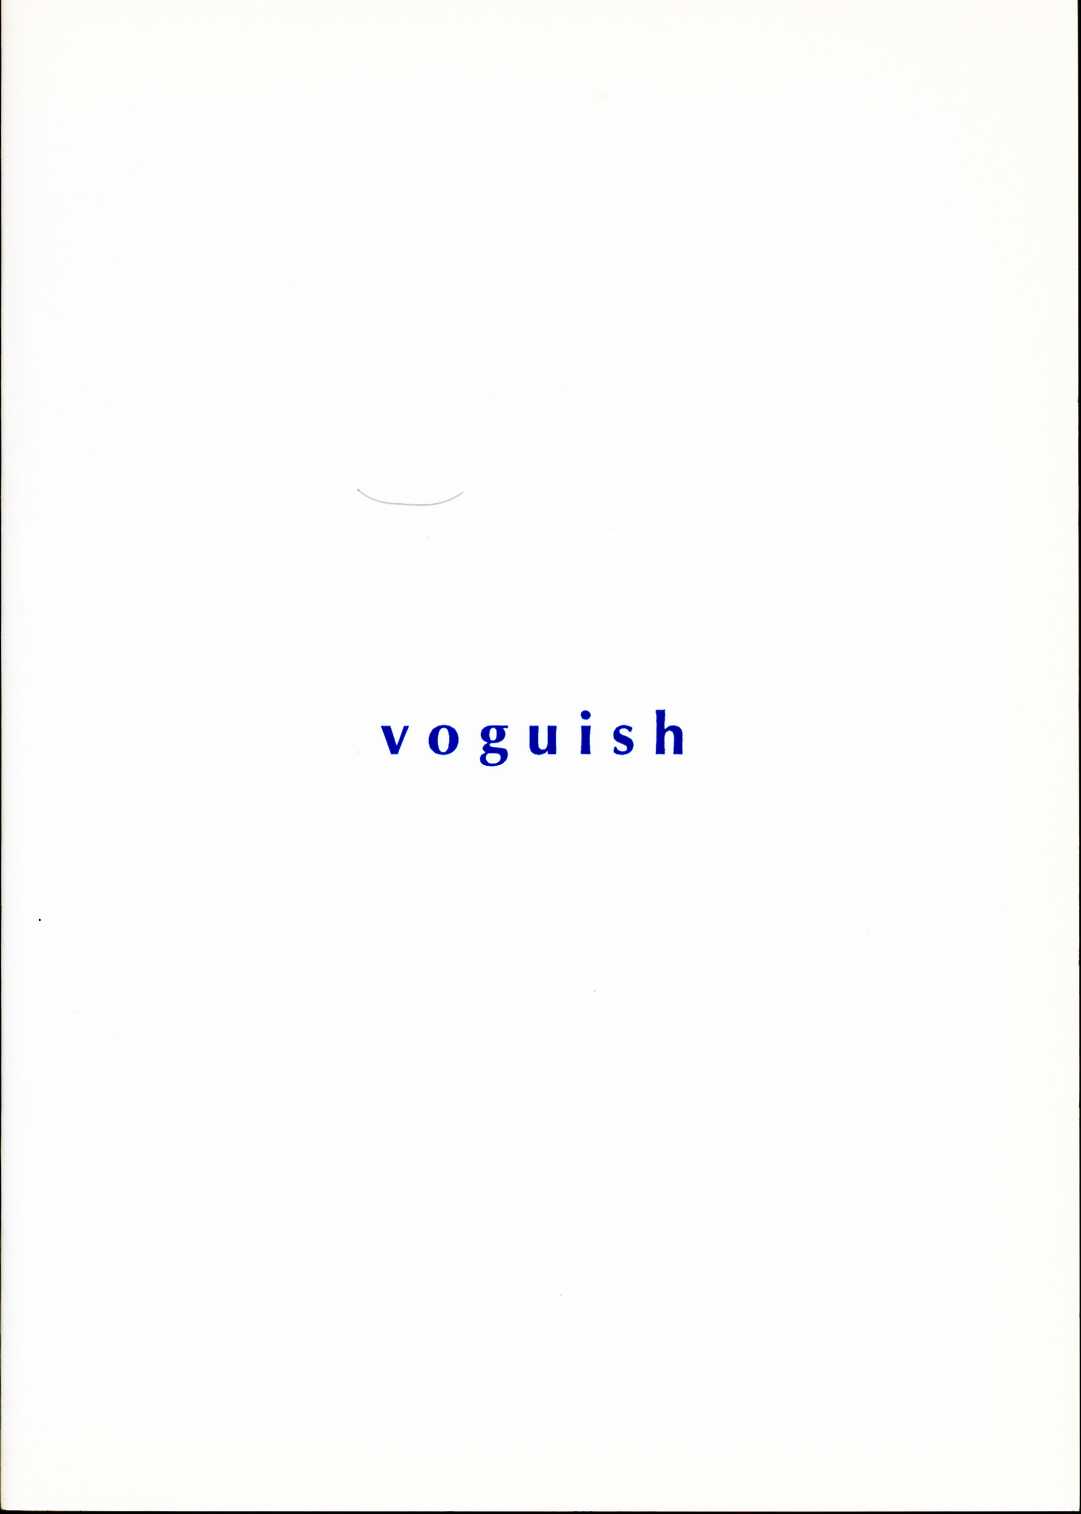 [Vogue] Voguish 1 - Outlaw Star 